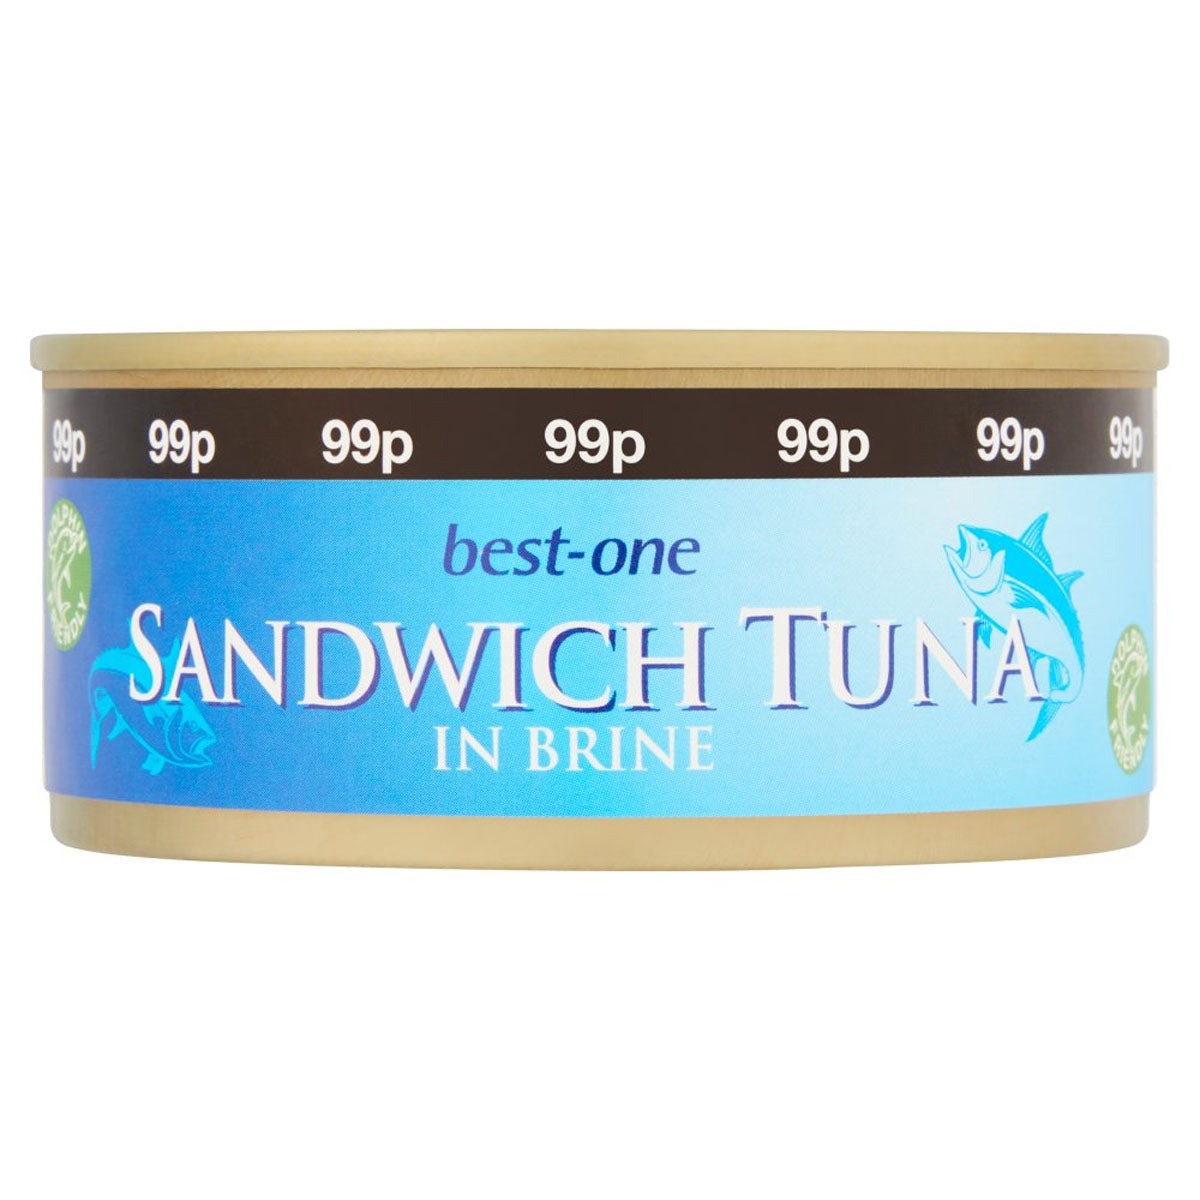 Best One - Sandwich Tuna in Brine - 160g is the best one sandwich tuna in brine.